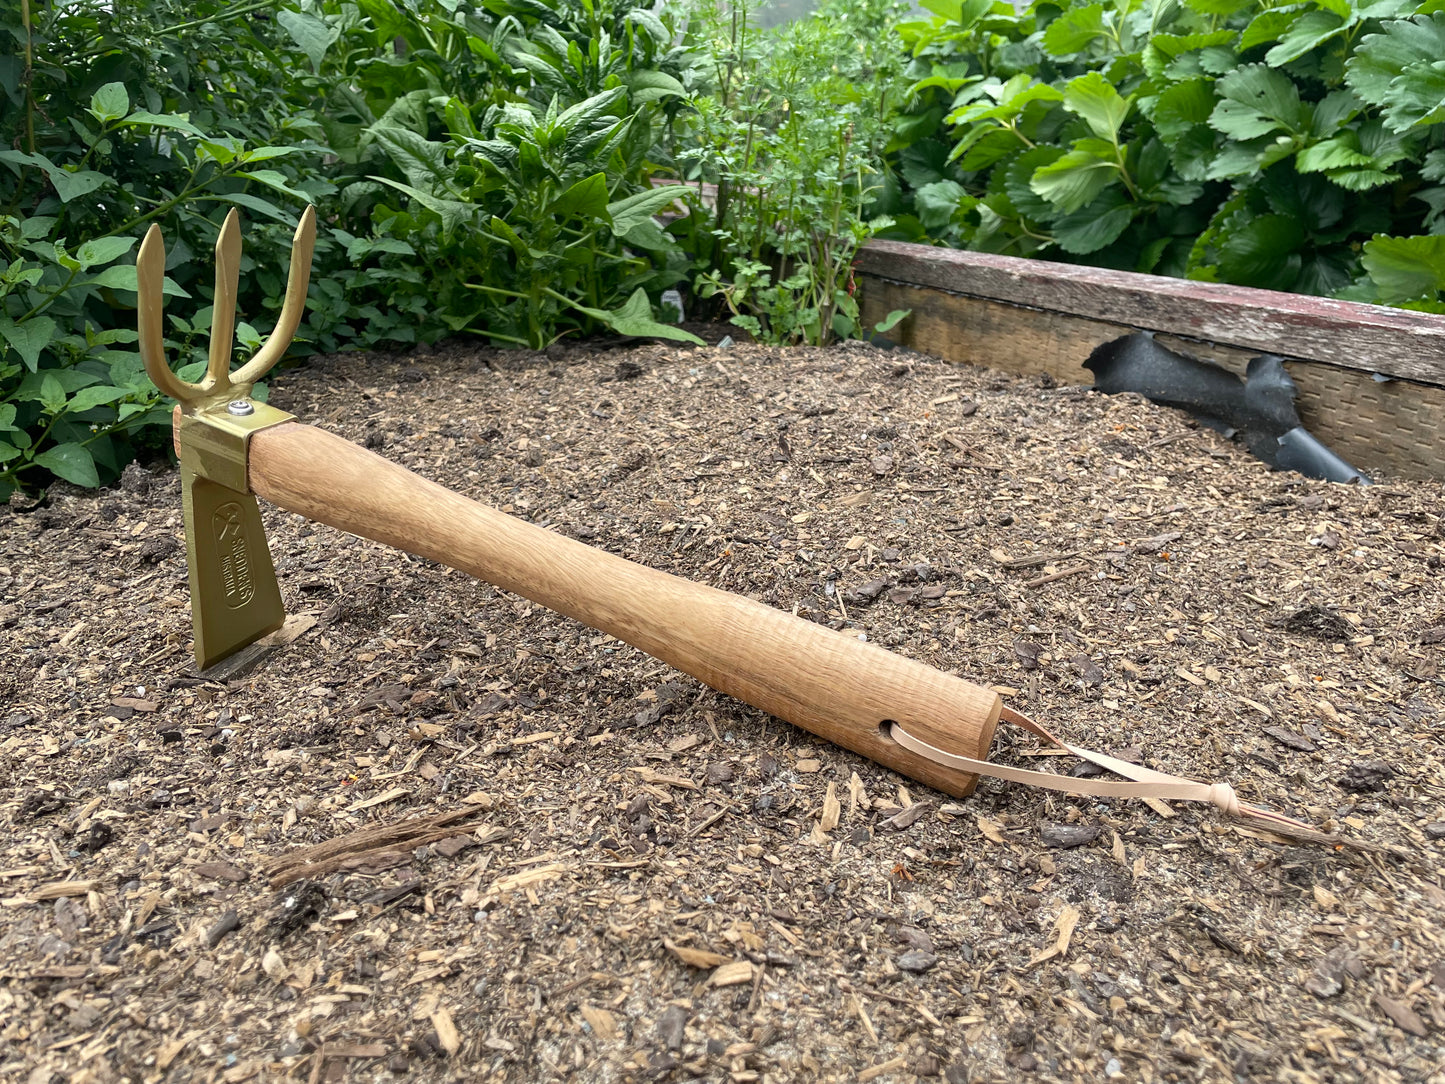 Garden Hoe / Fork Hand Tool - gold zinc finish